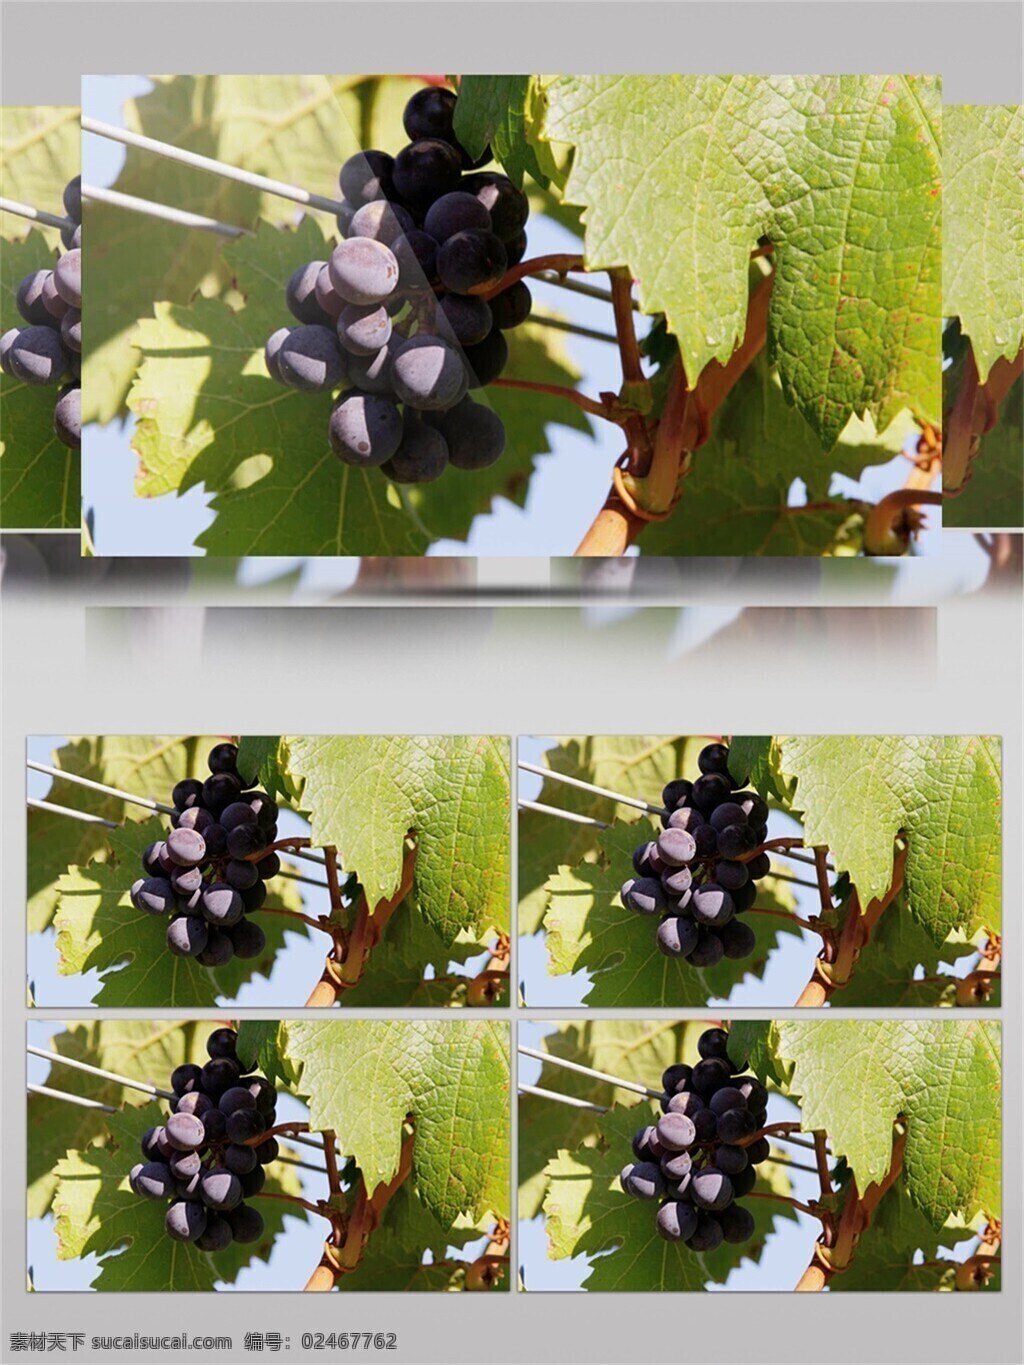 新鲜 美味 紫 葡萄 视频 音效 采摘 葡萄种植 紫色 绿色 叶子 生长过程 视频音效